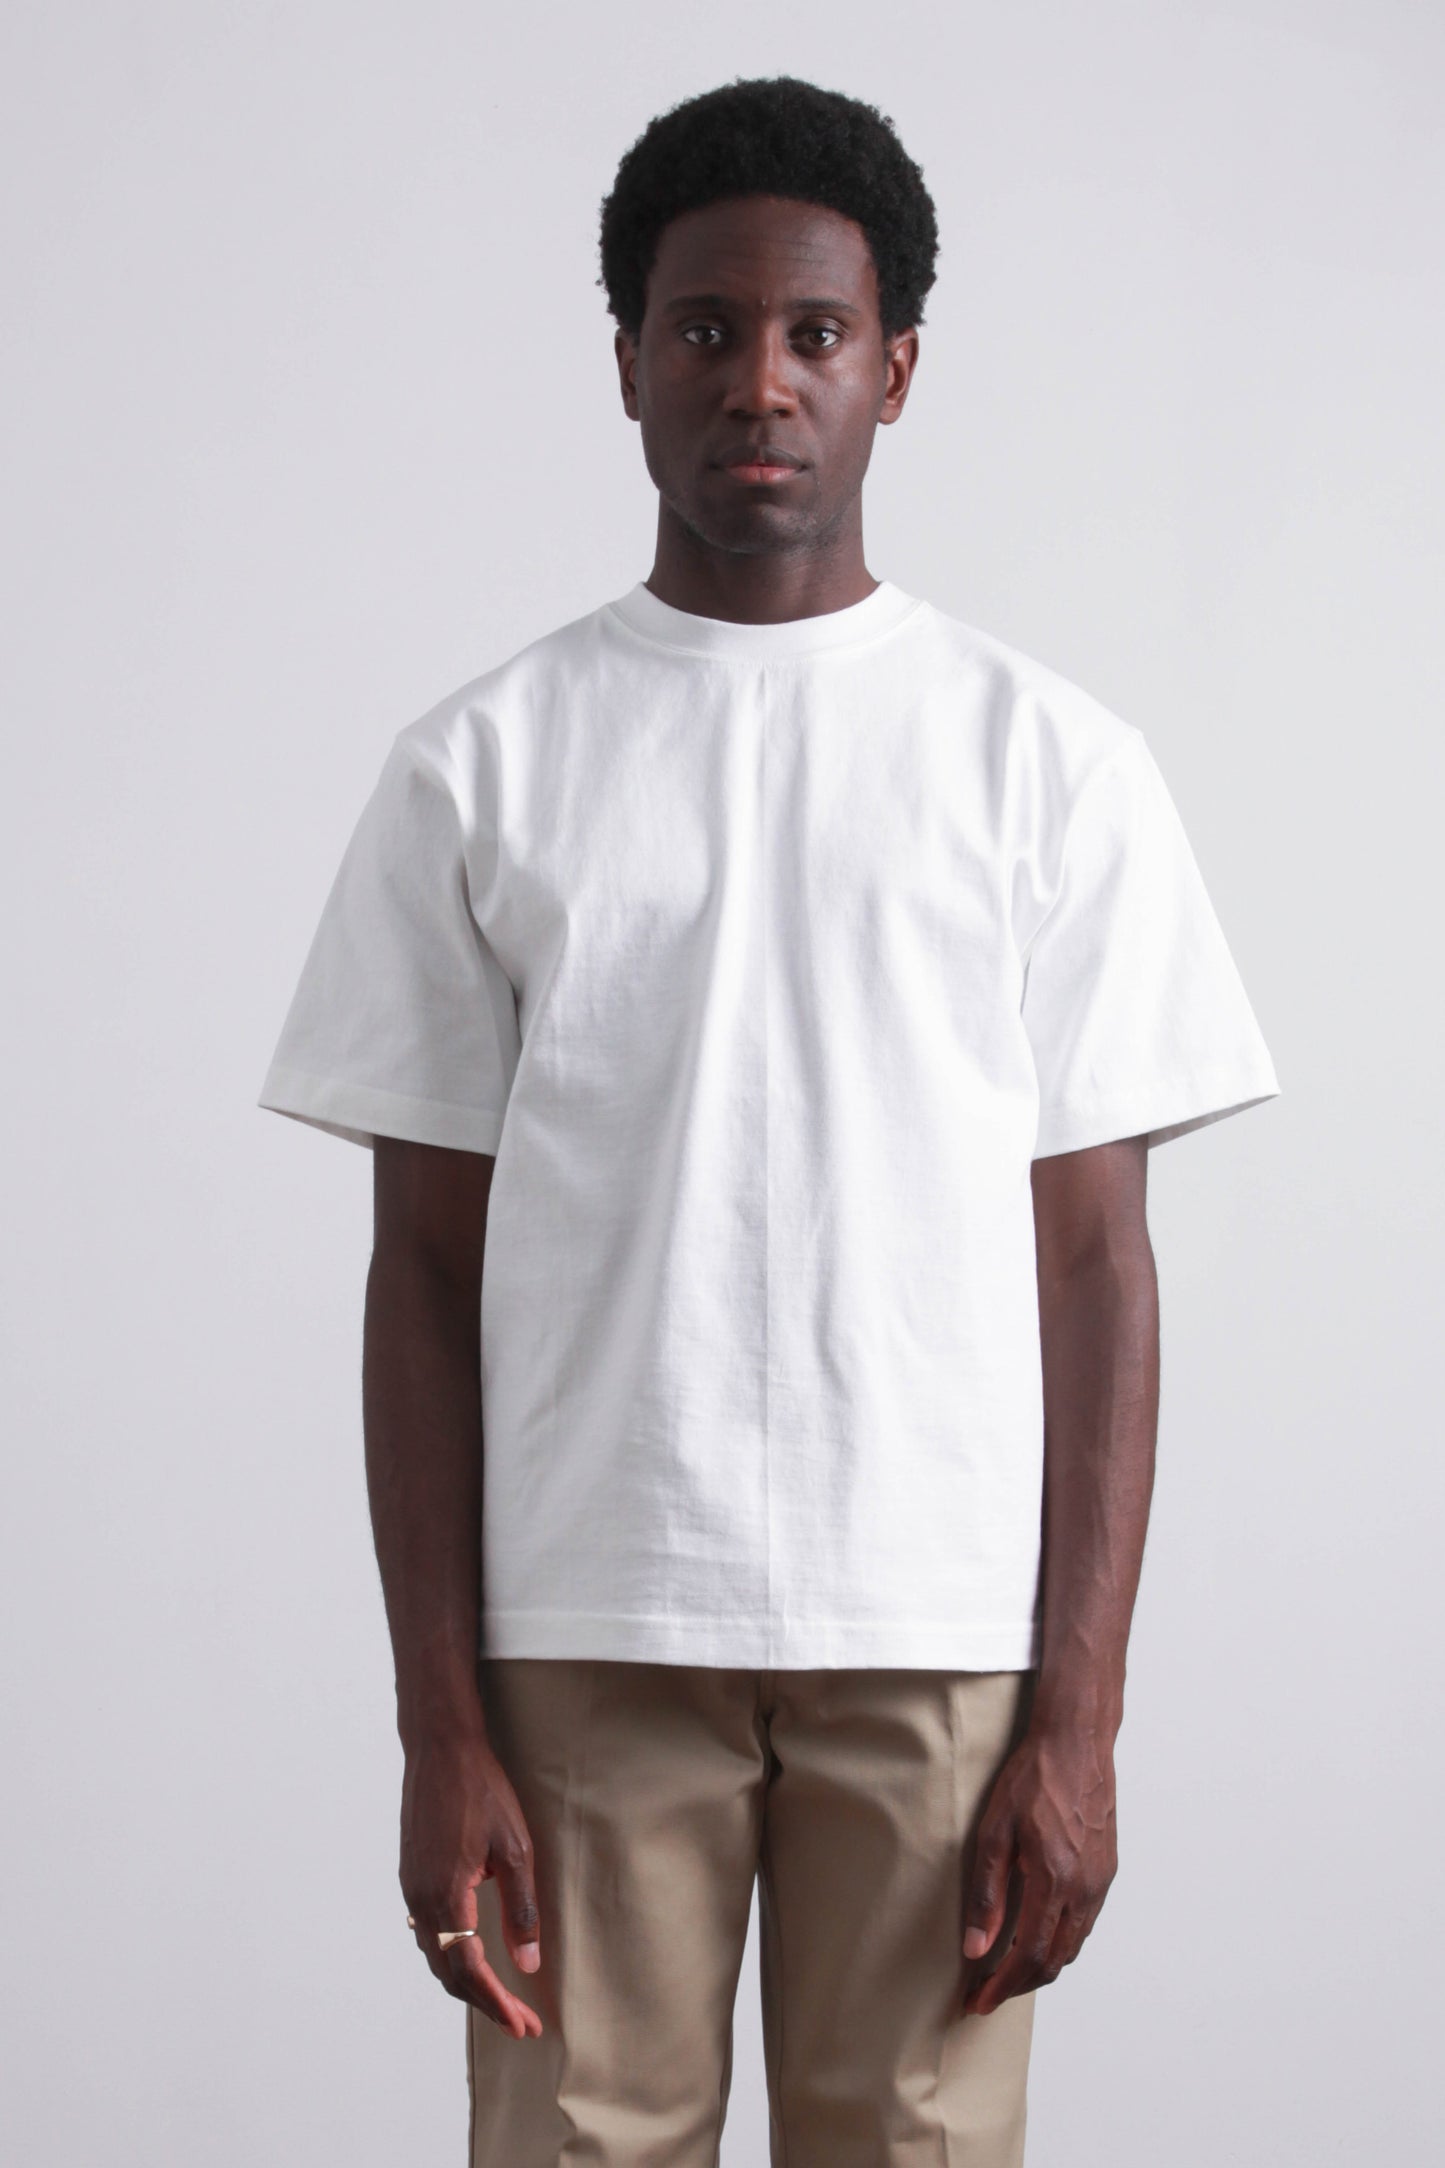 CAMBER USA suuupply – Max-weight White - T-shirt